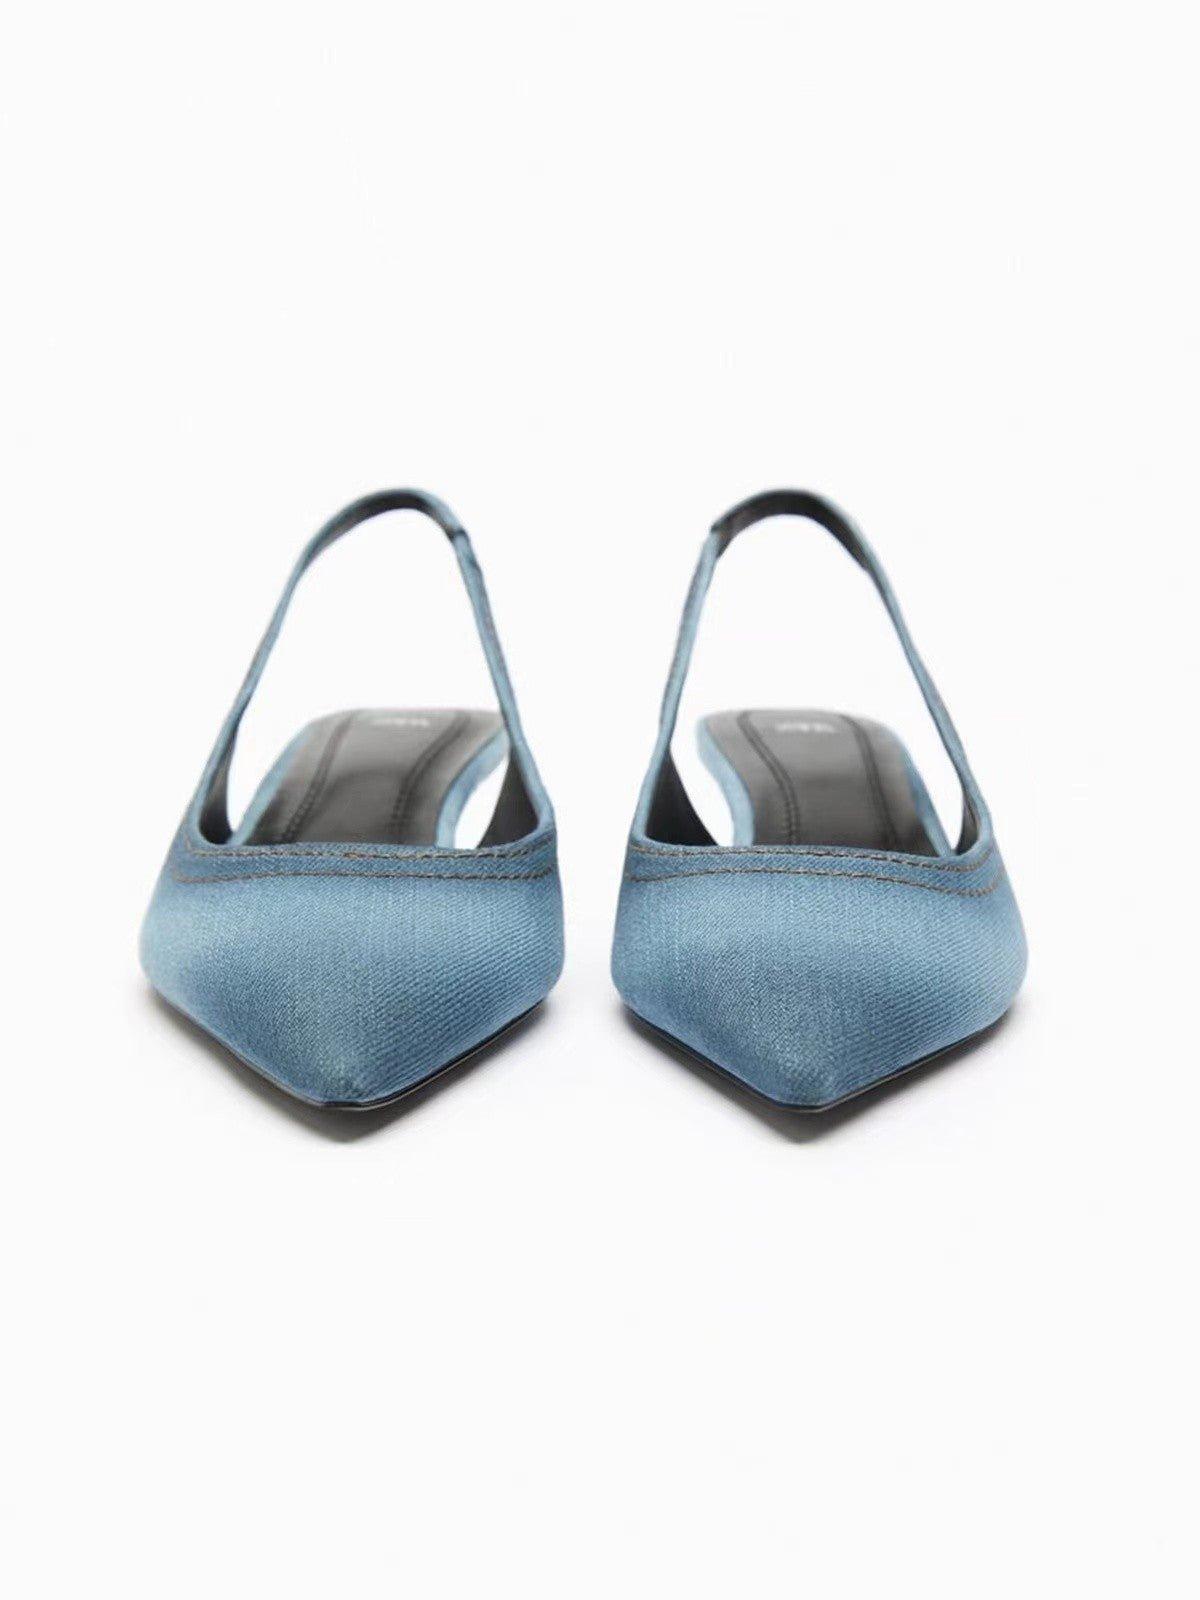 Women's Blue Denim Fabric High Heels | MODE BY OH